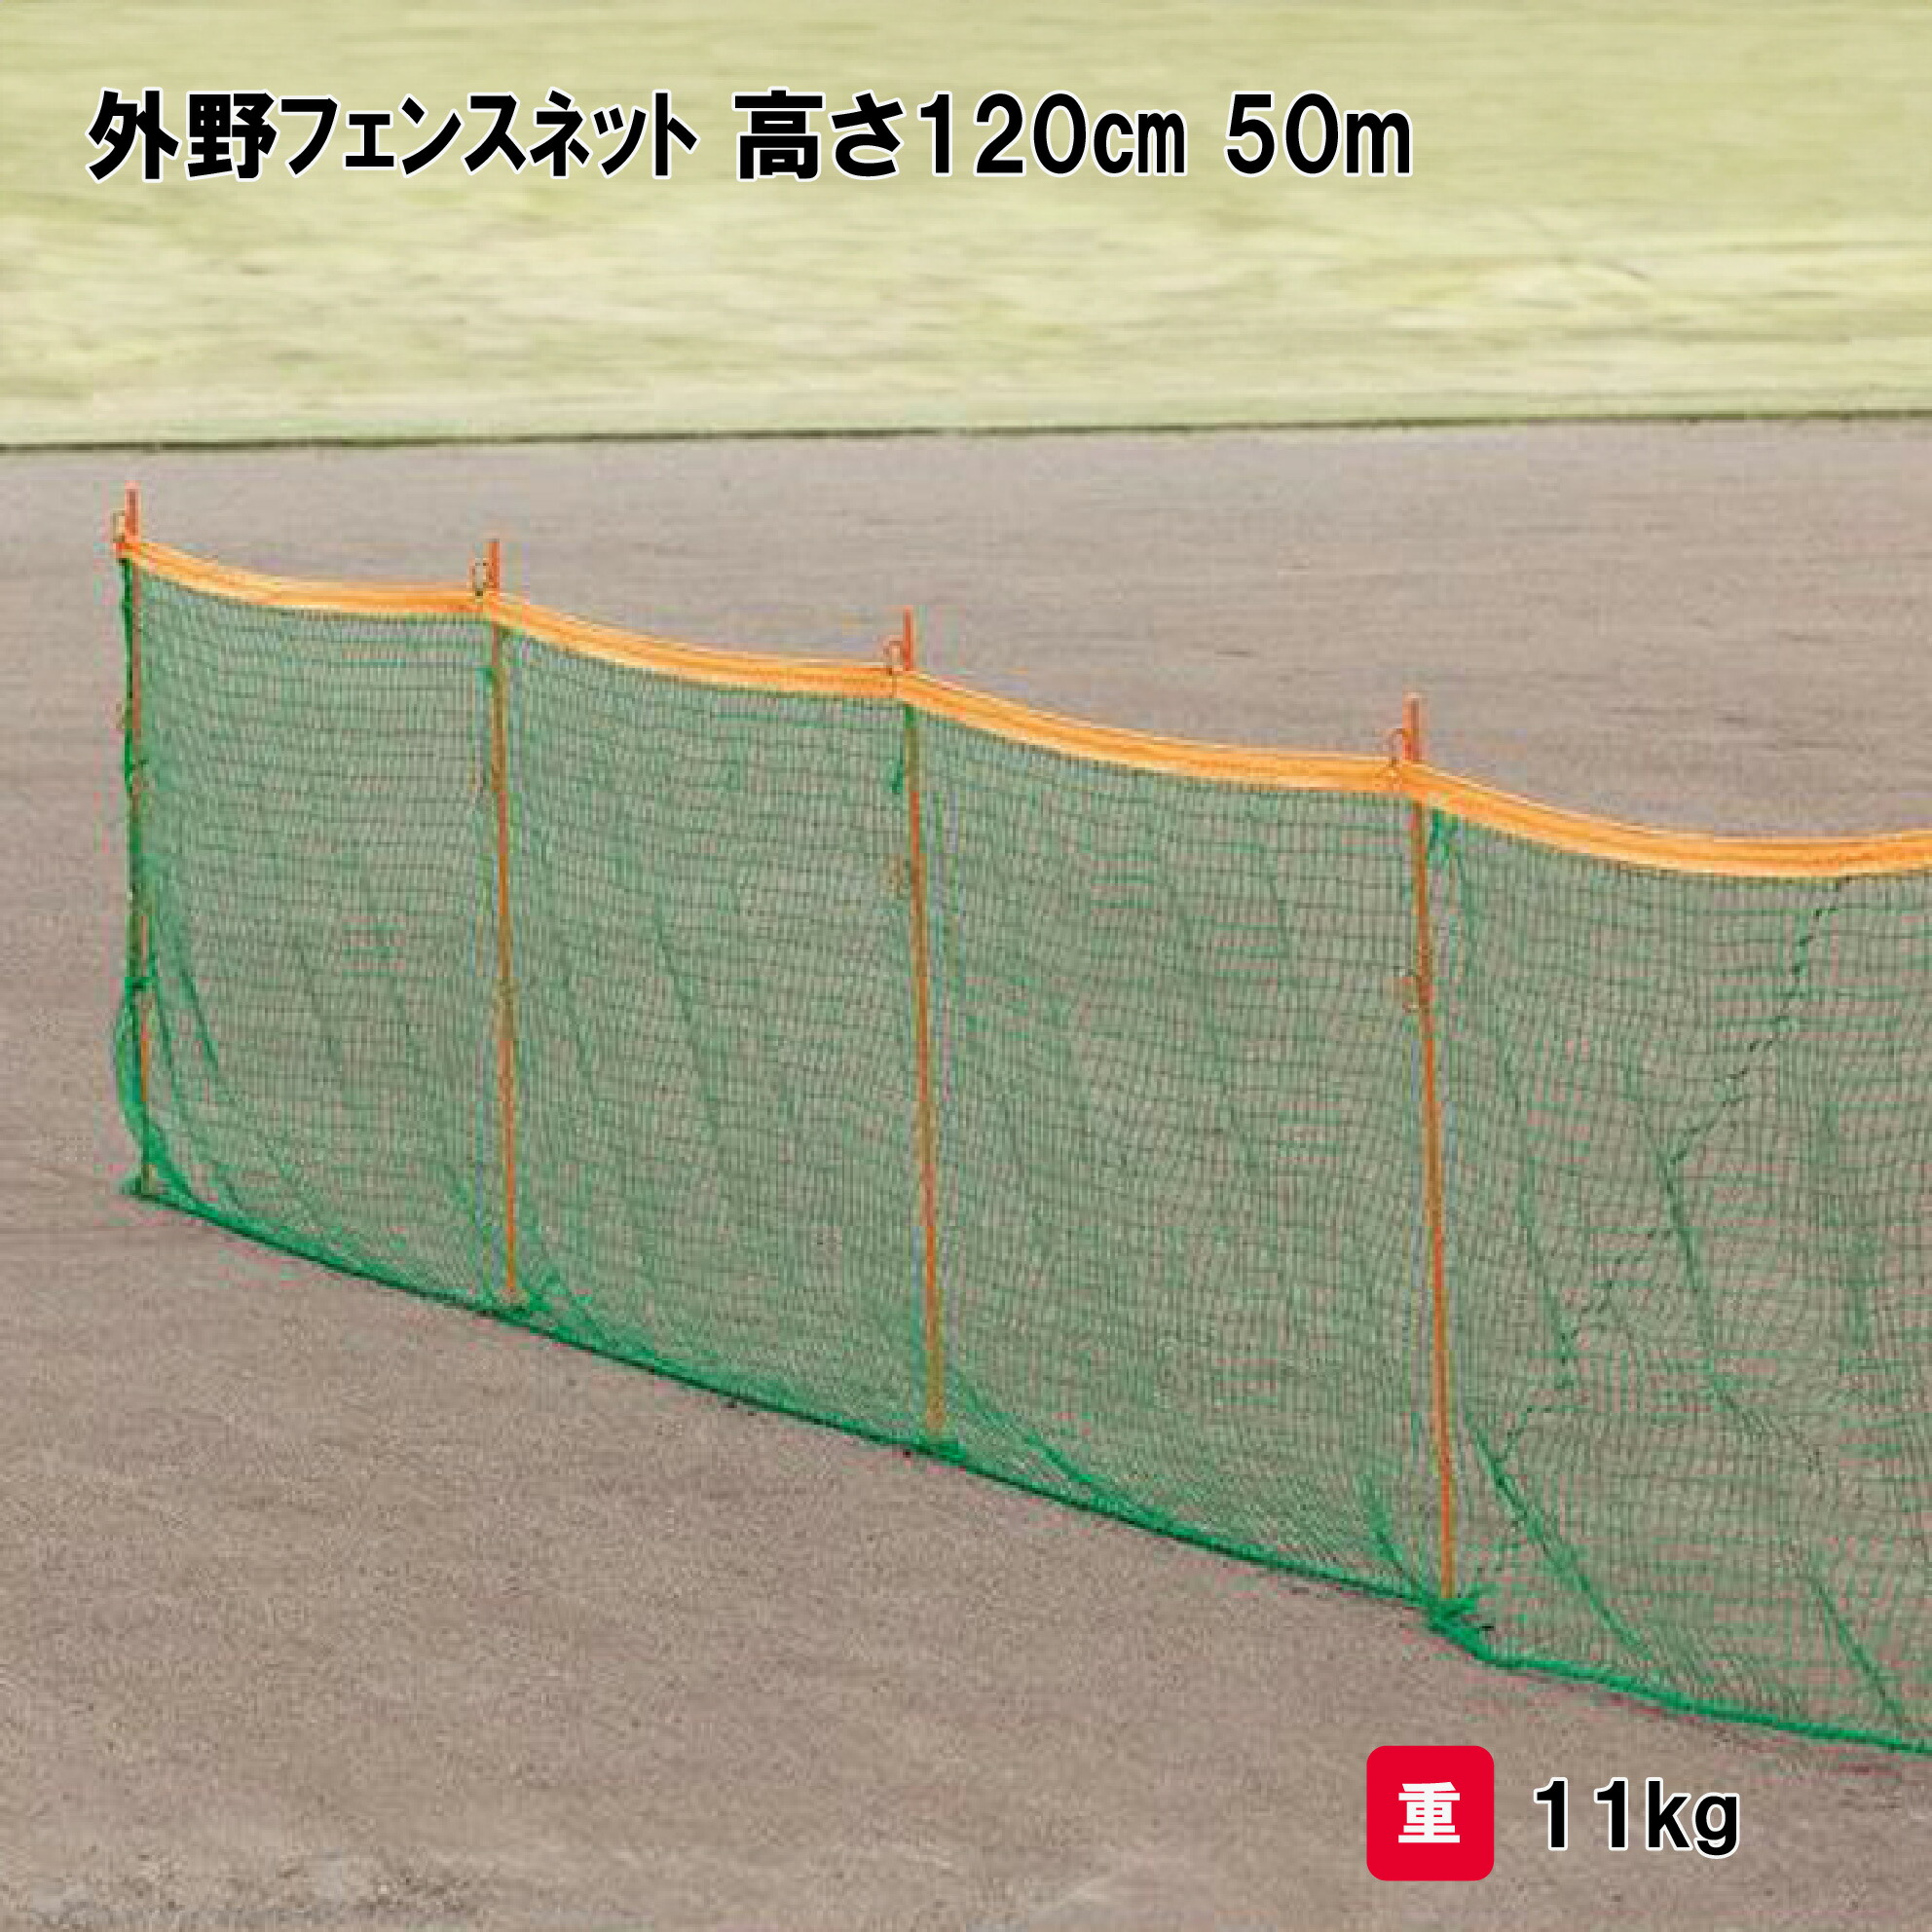 【楽天市場】野球 外野フェンス 防球ネット 簡易仕切りネット 学校 